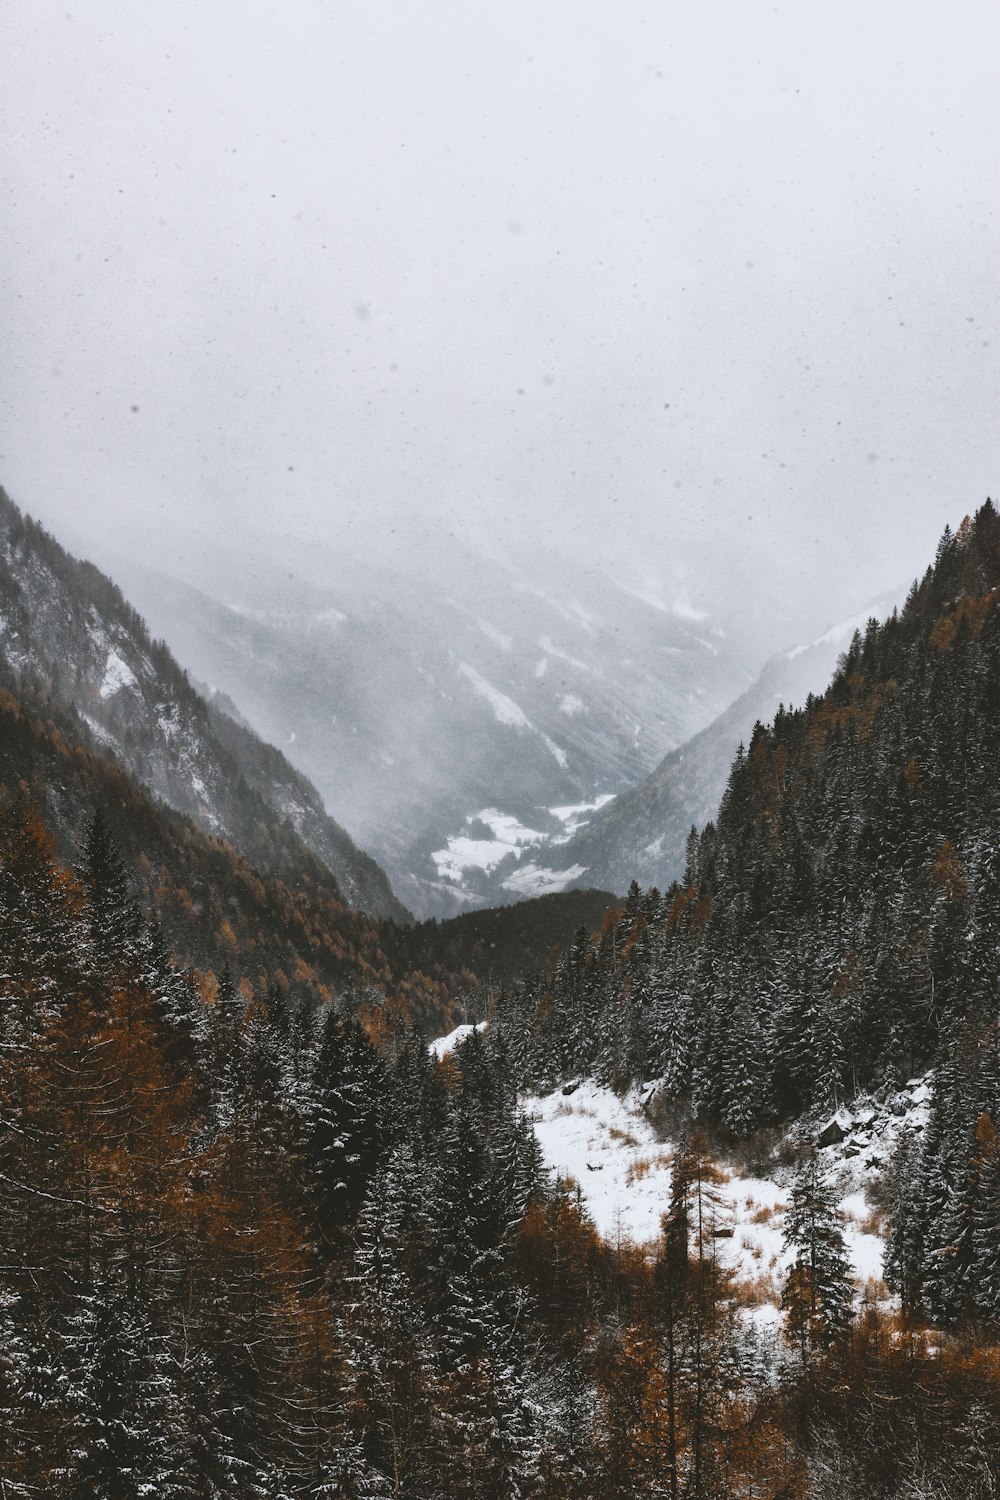 fotografia de paisagem da montanha nevada sob o céu nevado